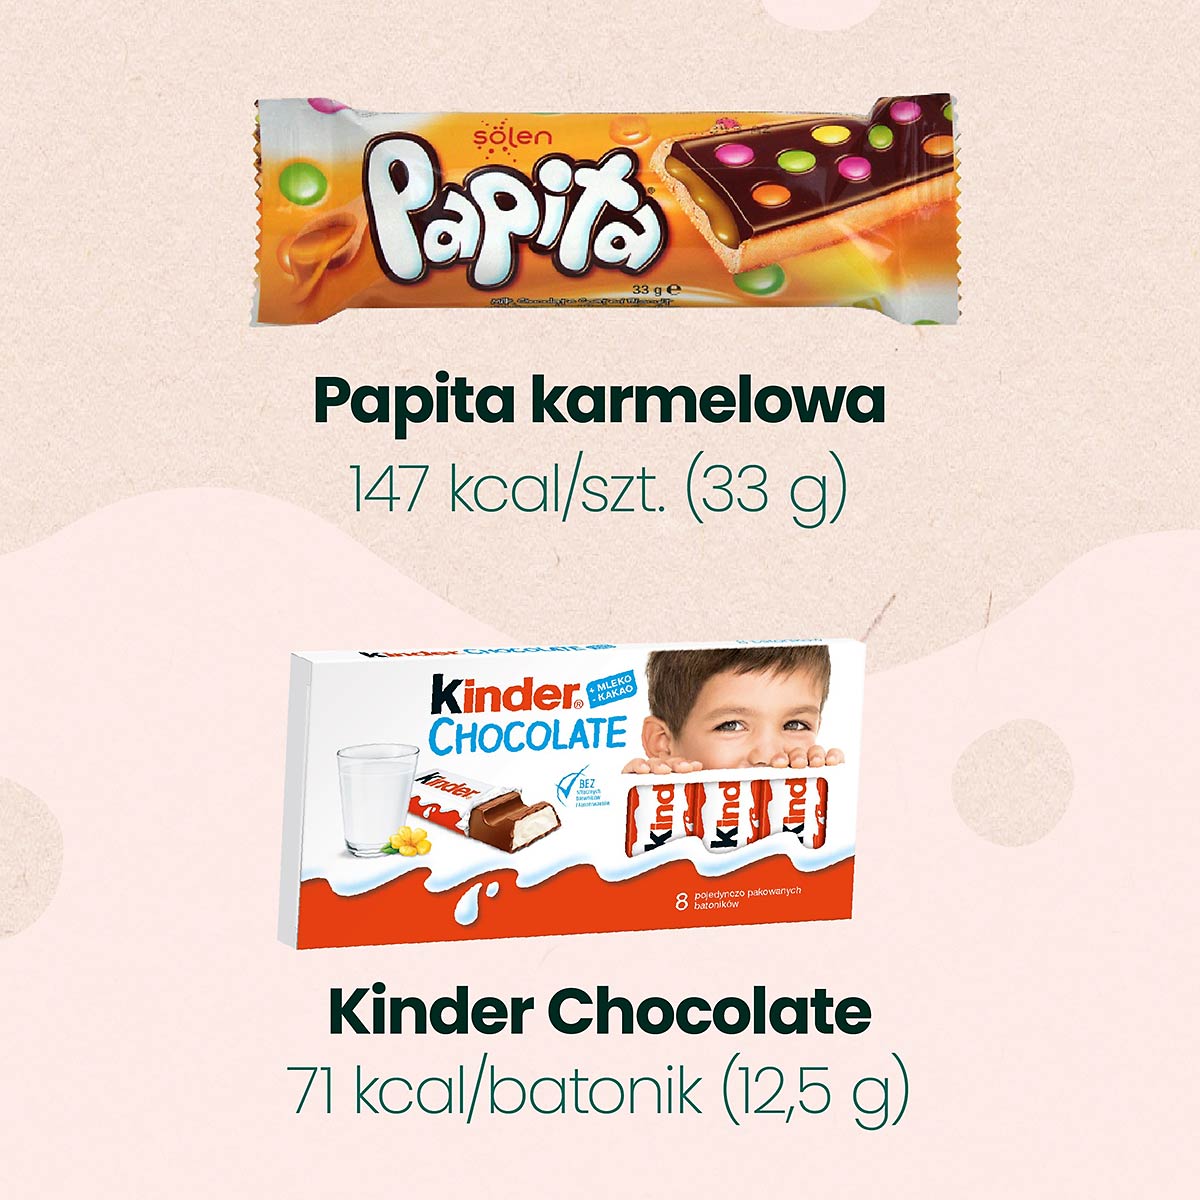 Papita karmelowa i Kinfer chocolate mają to słodycze niskokaloryczne